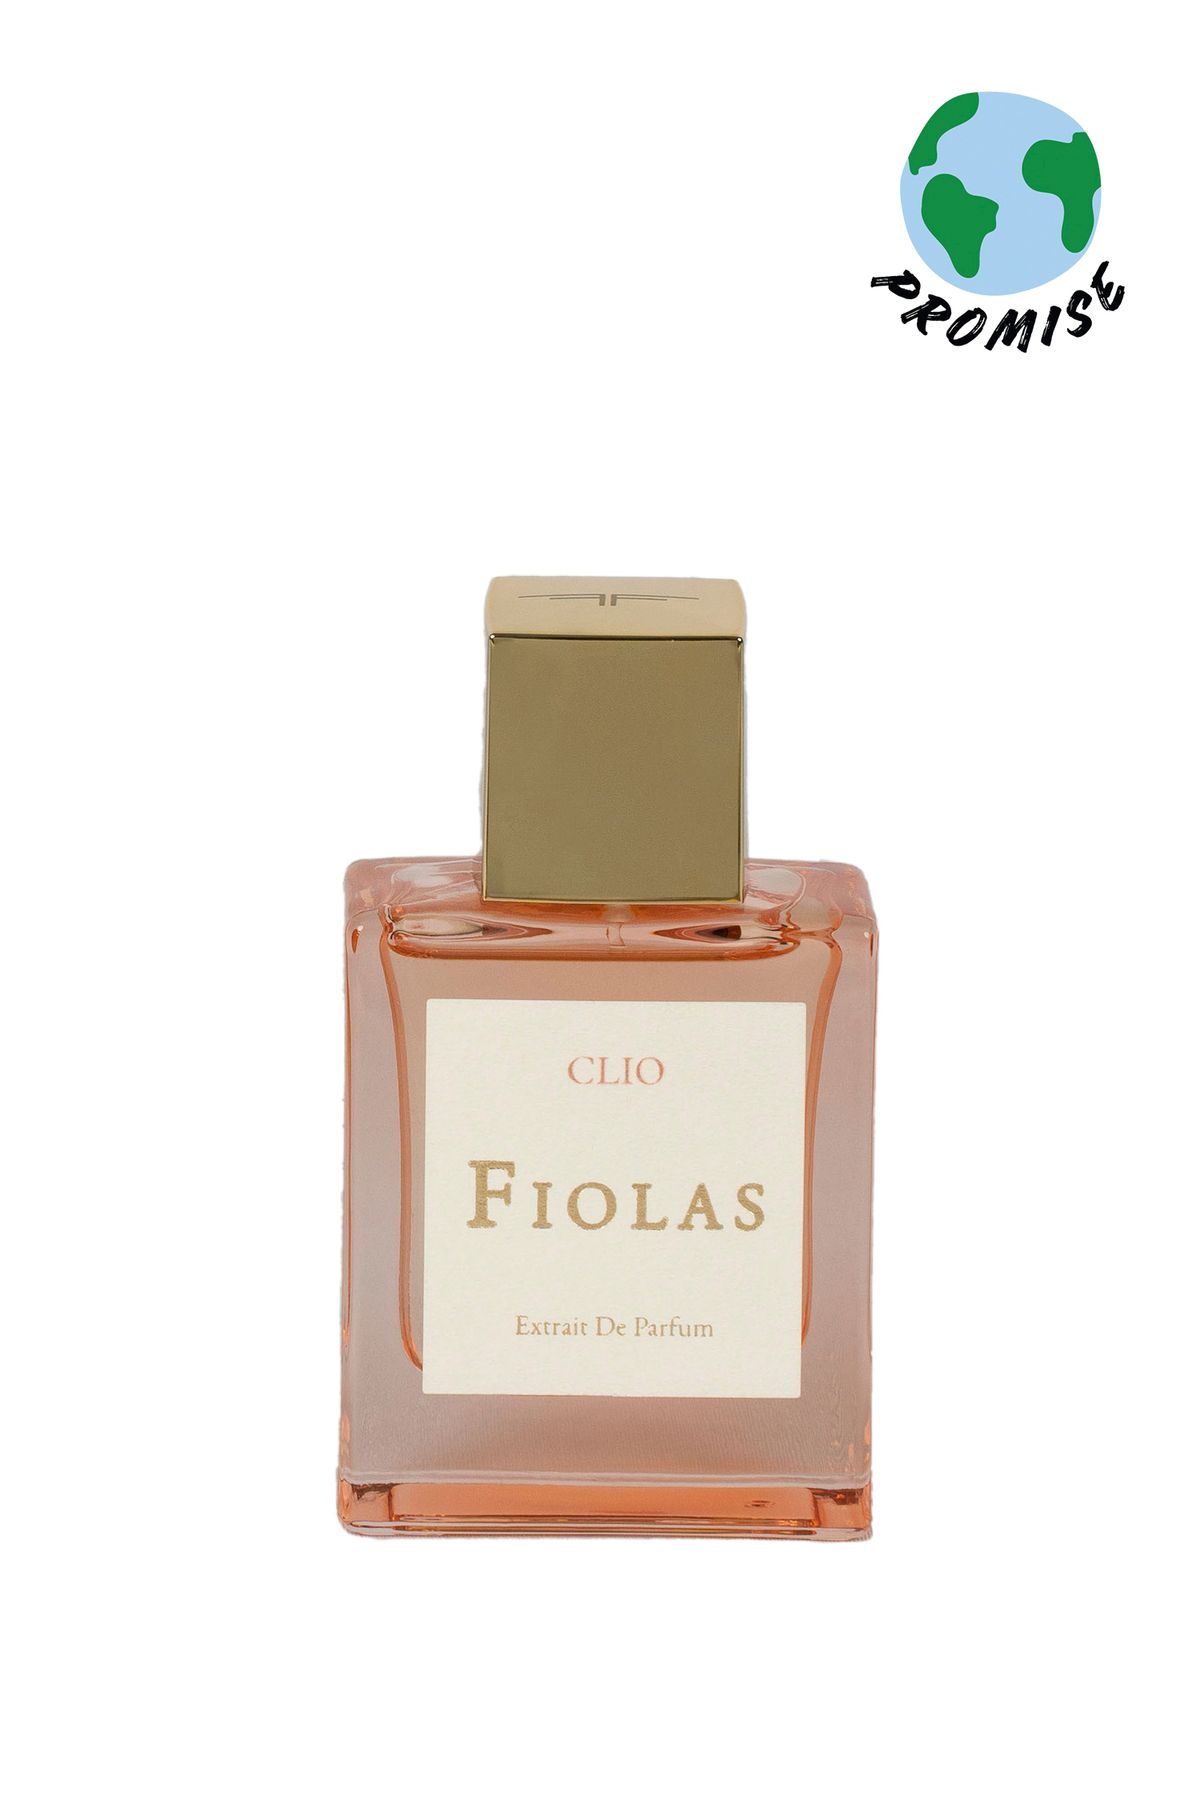 Fiolas Clio Extrait De Parfum